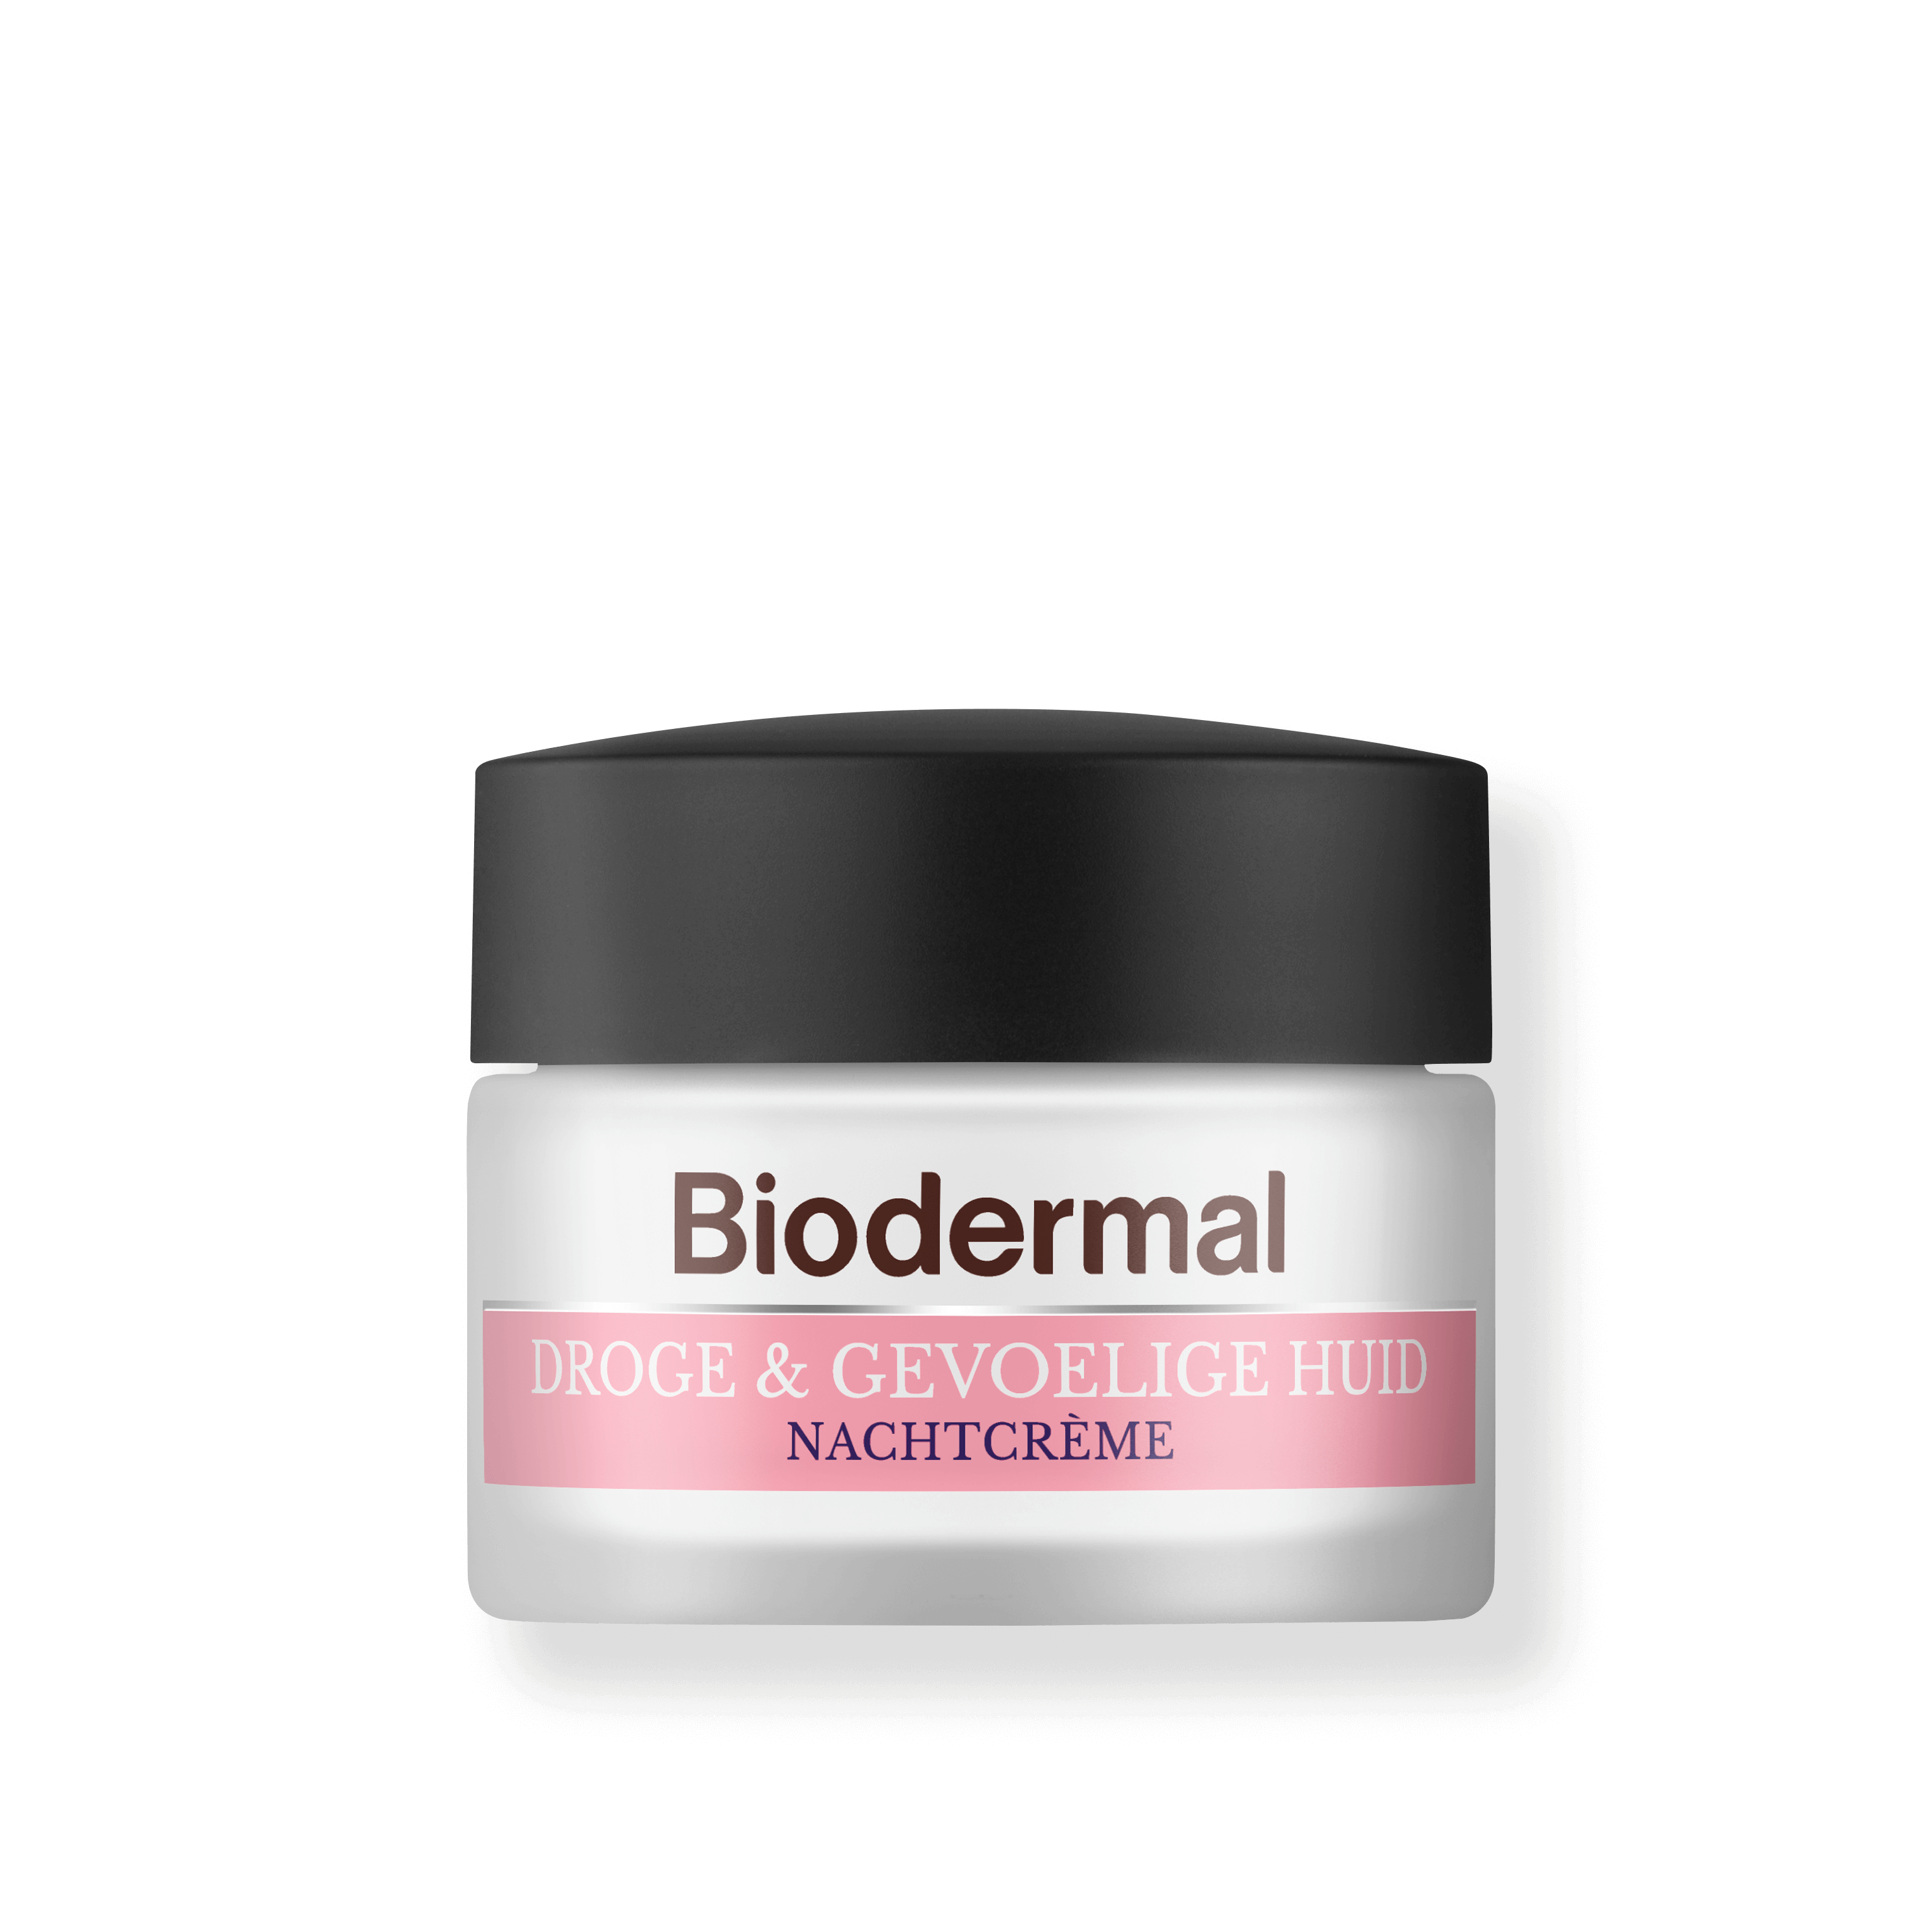 Droge gevoelige huid van Biodermal | Biodermal